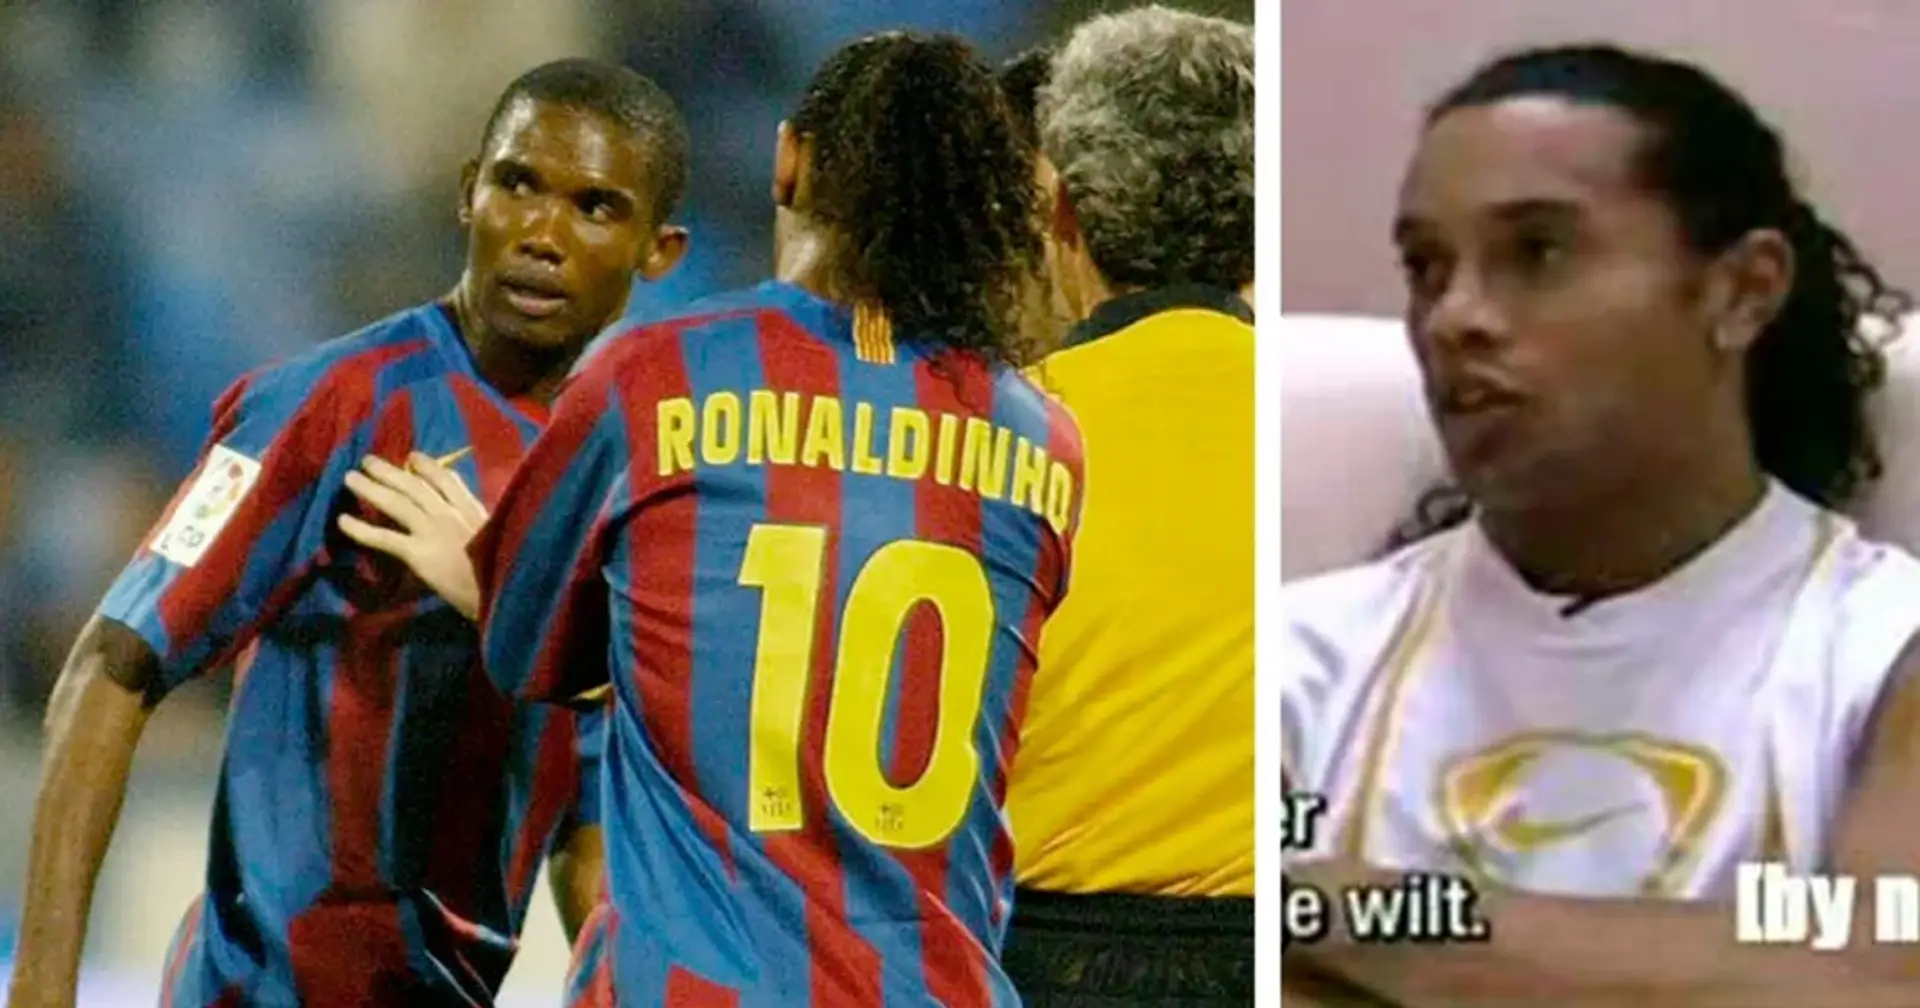 'Si te vas, yo voy contigo': cómo Ronaldinho convenció una vez a Eto'o para que siguiera jugando a pesar de sufrir racismo